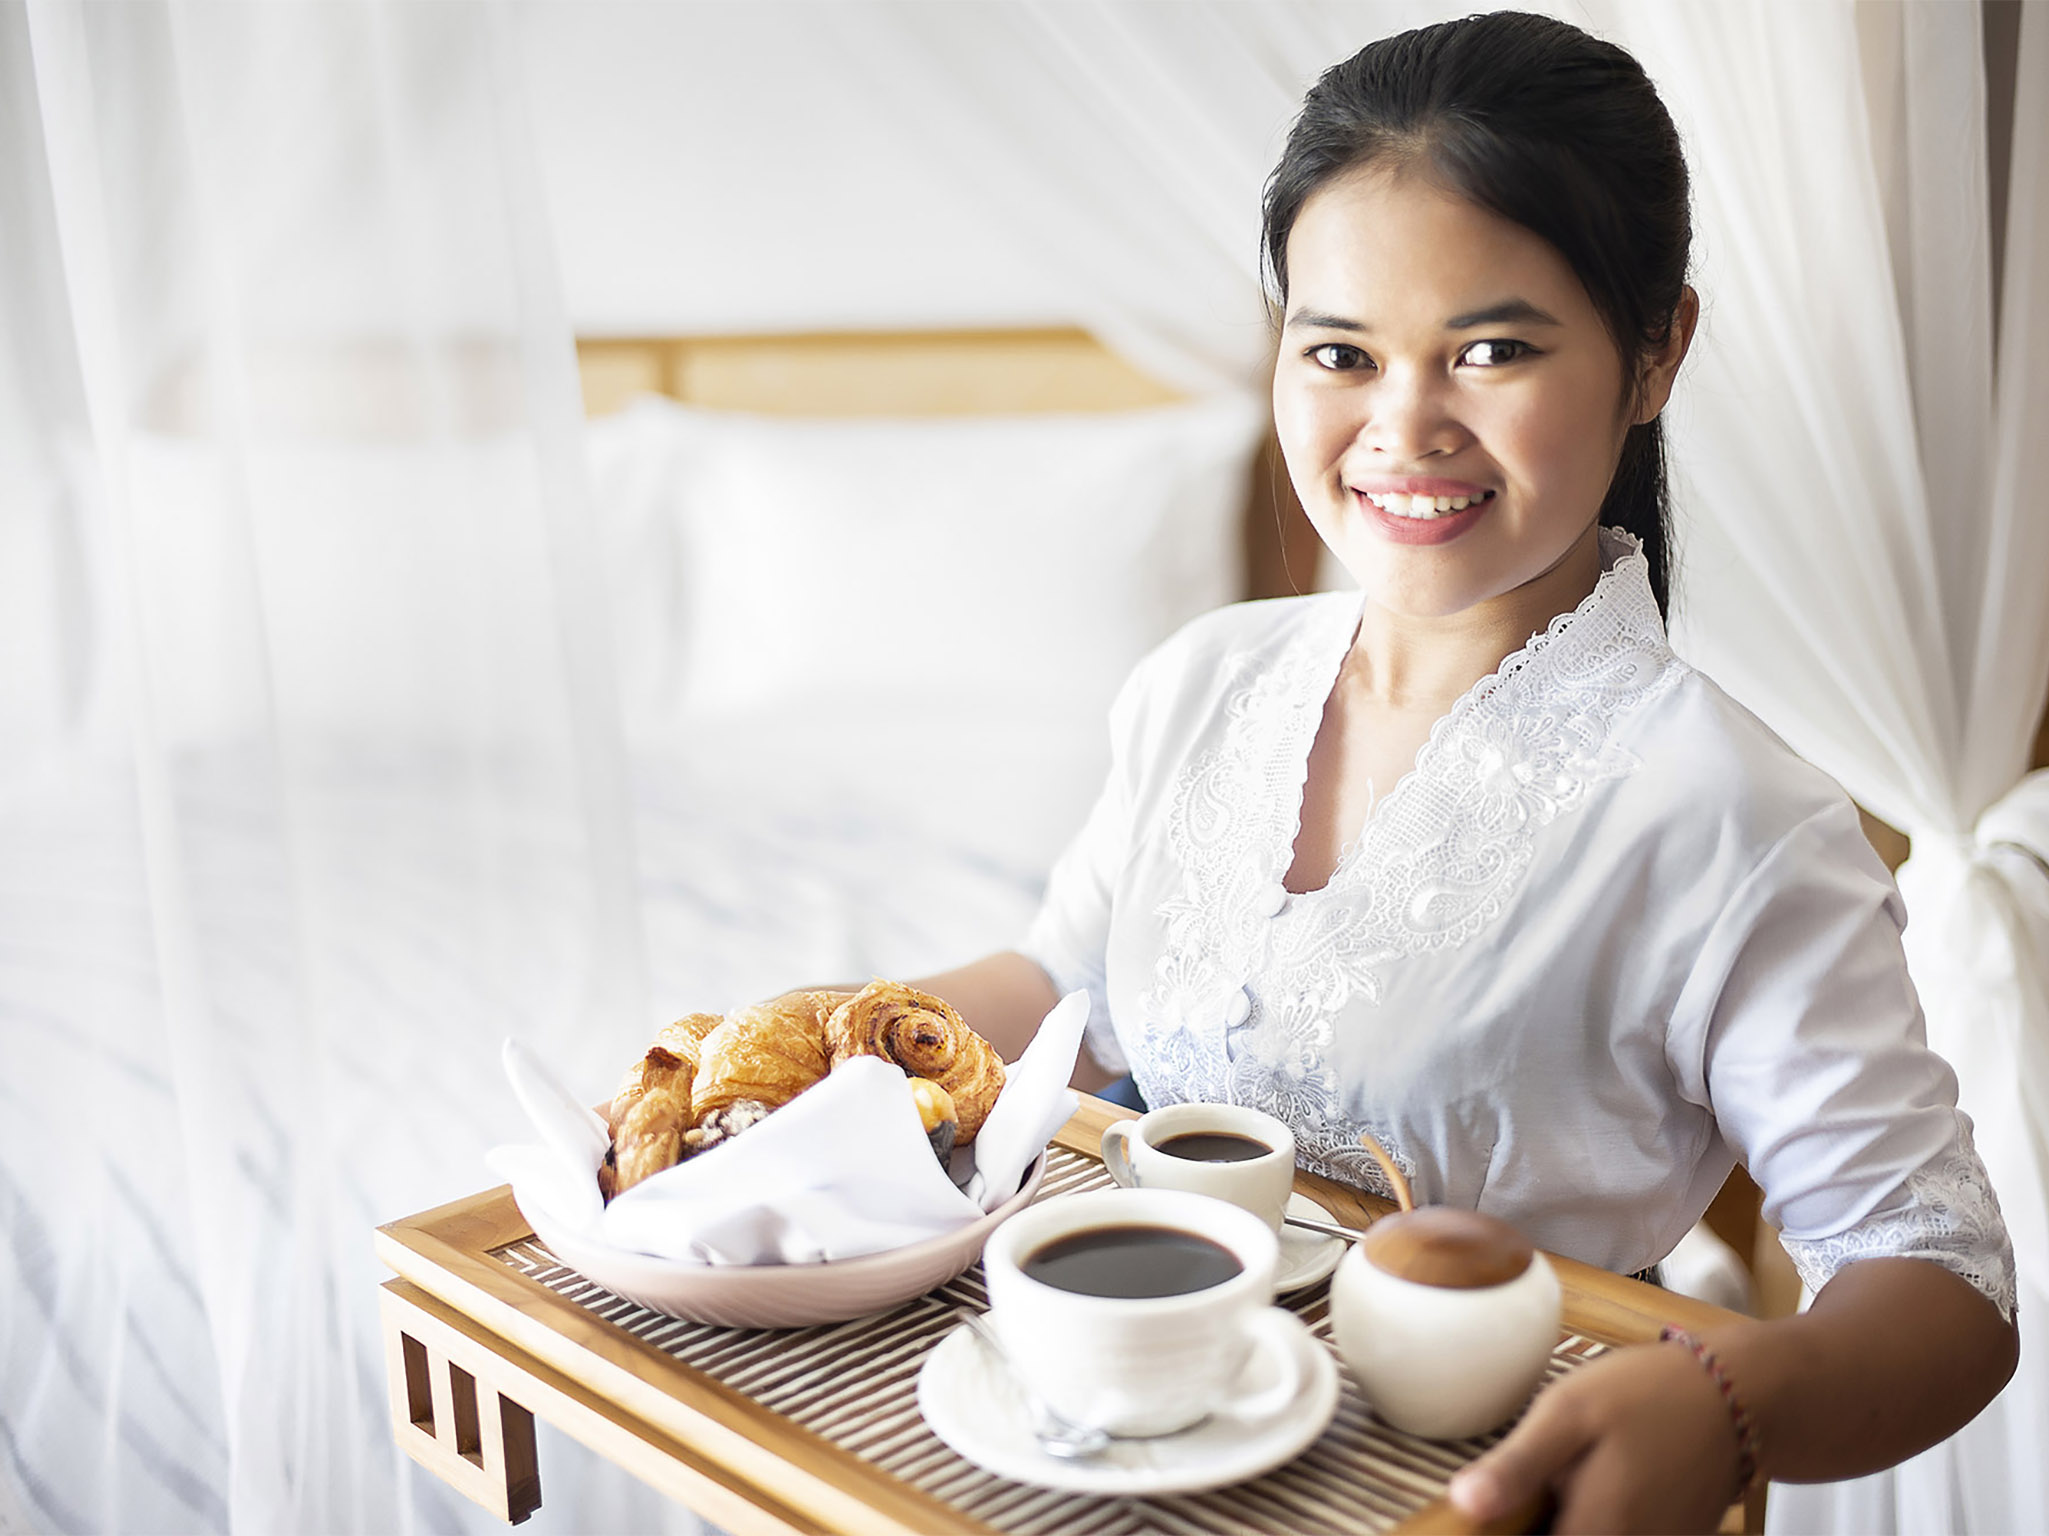 Villa Indrani - Coffee and bread for room service - Villa Indrani, Canggu, Bali